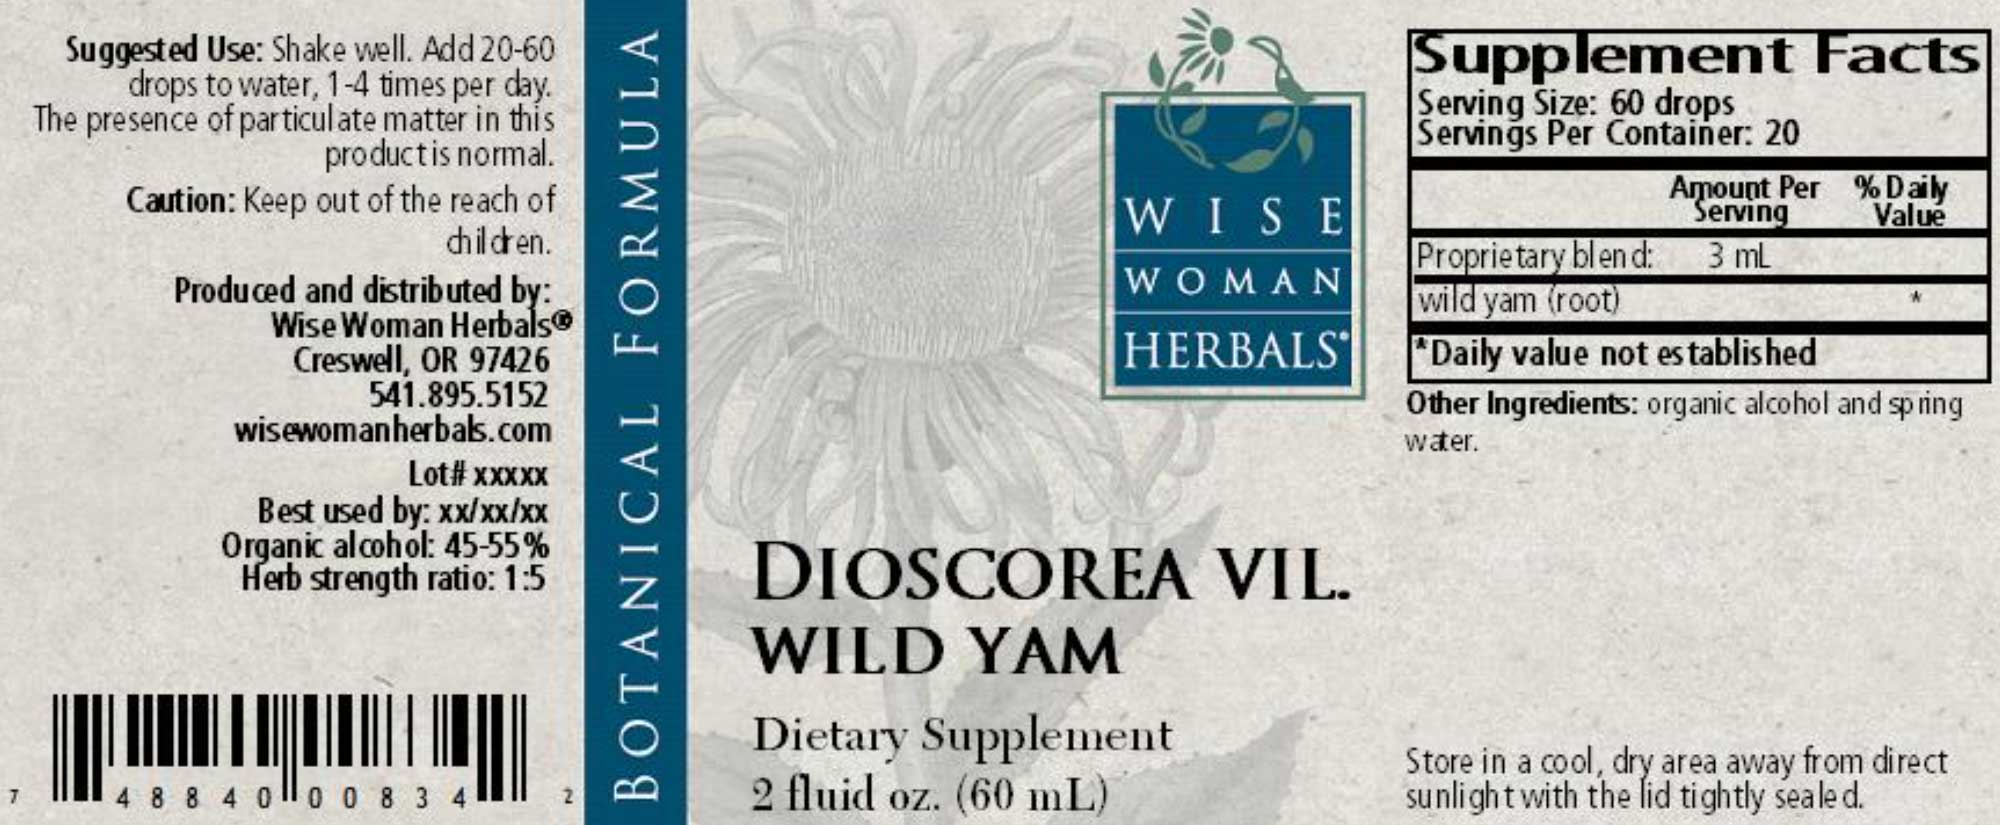 Wise Woman Herbals Dioscorea Villosa Wild Yam Label